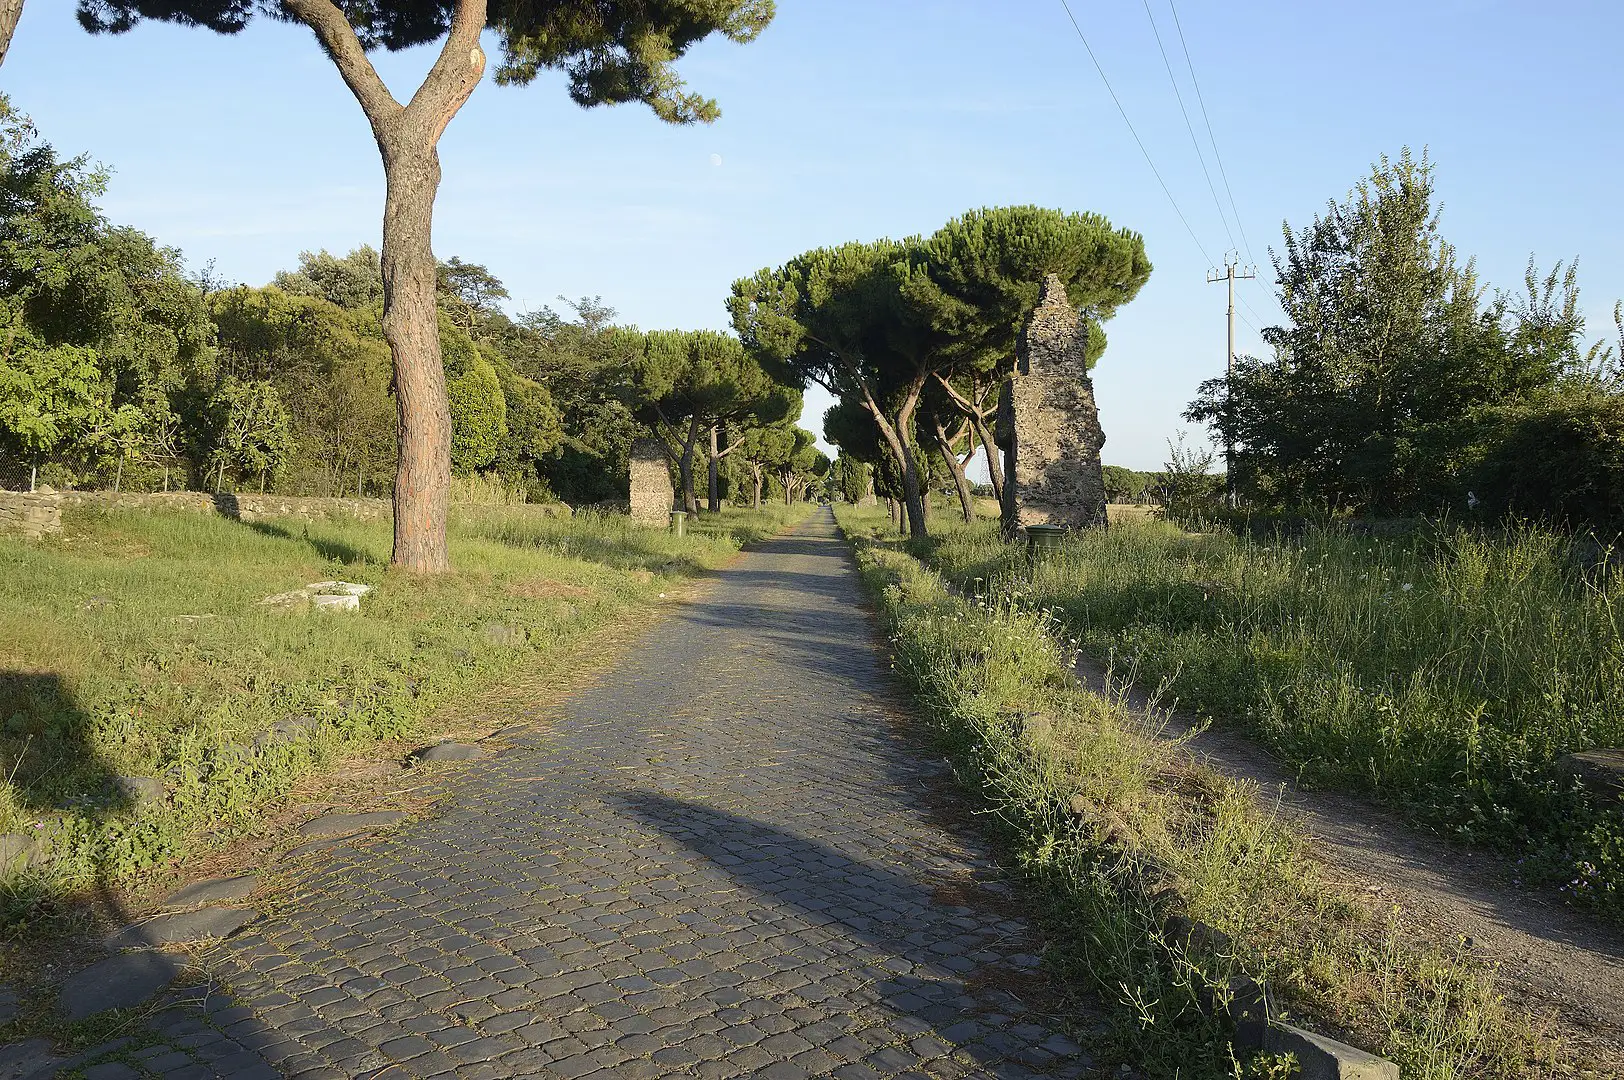 Via Appia, una de las vías más importantes de la antigua Roma, construida hace más de 2.000 años